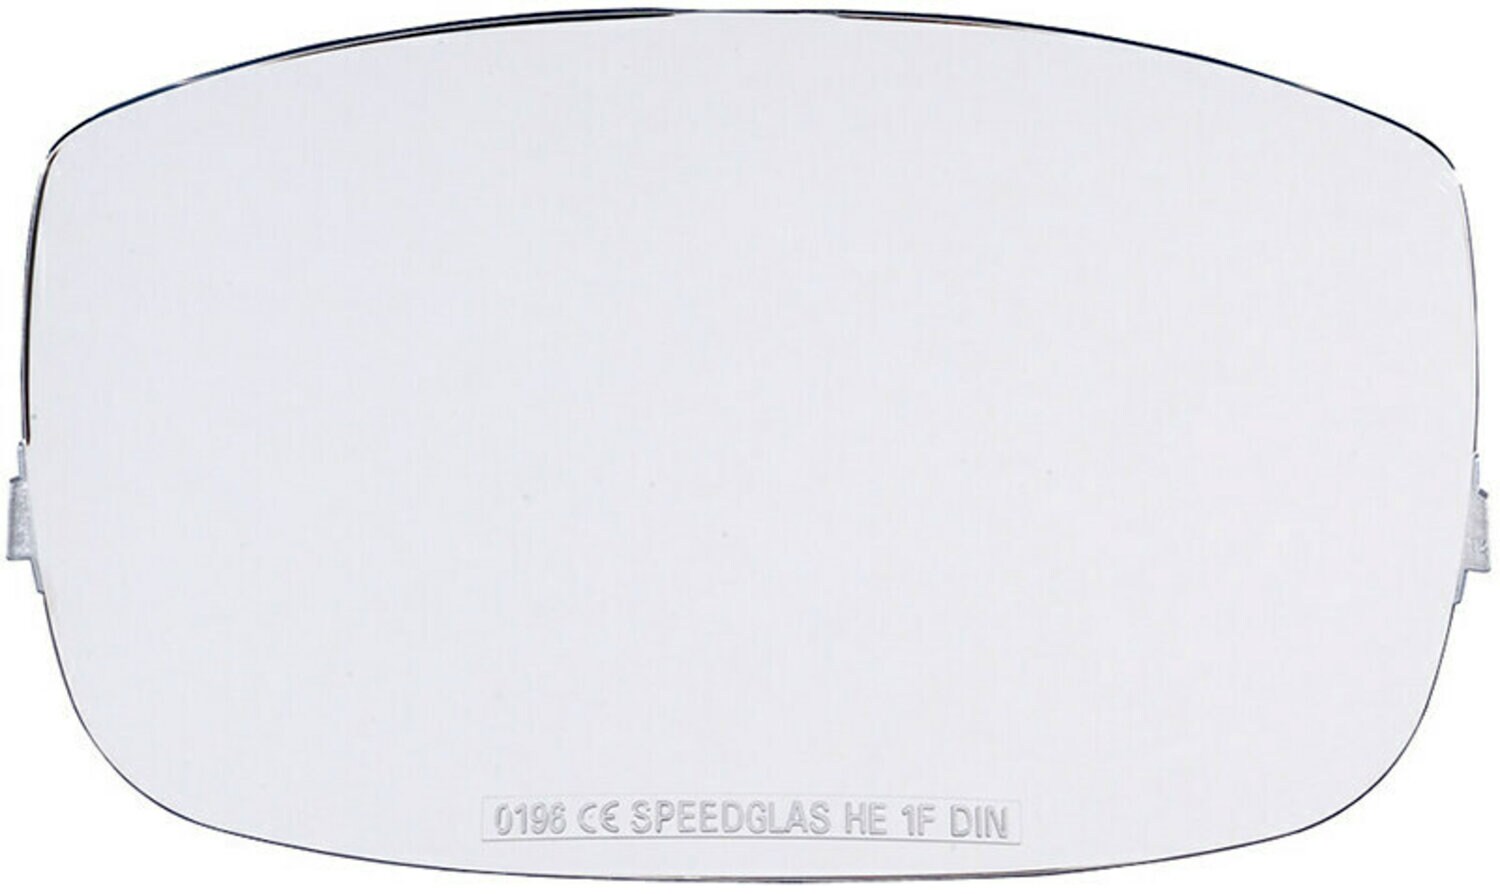 7000126757 - 3M Speedglas Welding Helmet Outside Protection Plate 9000 04-0270-04,
5 EA/Case